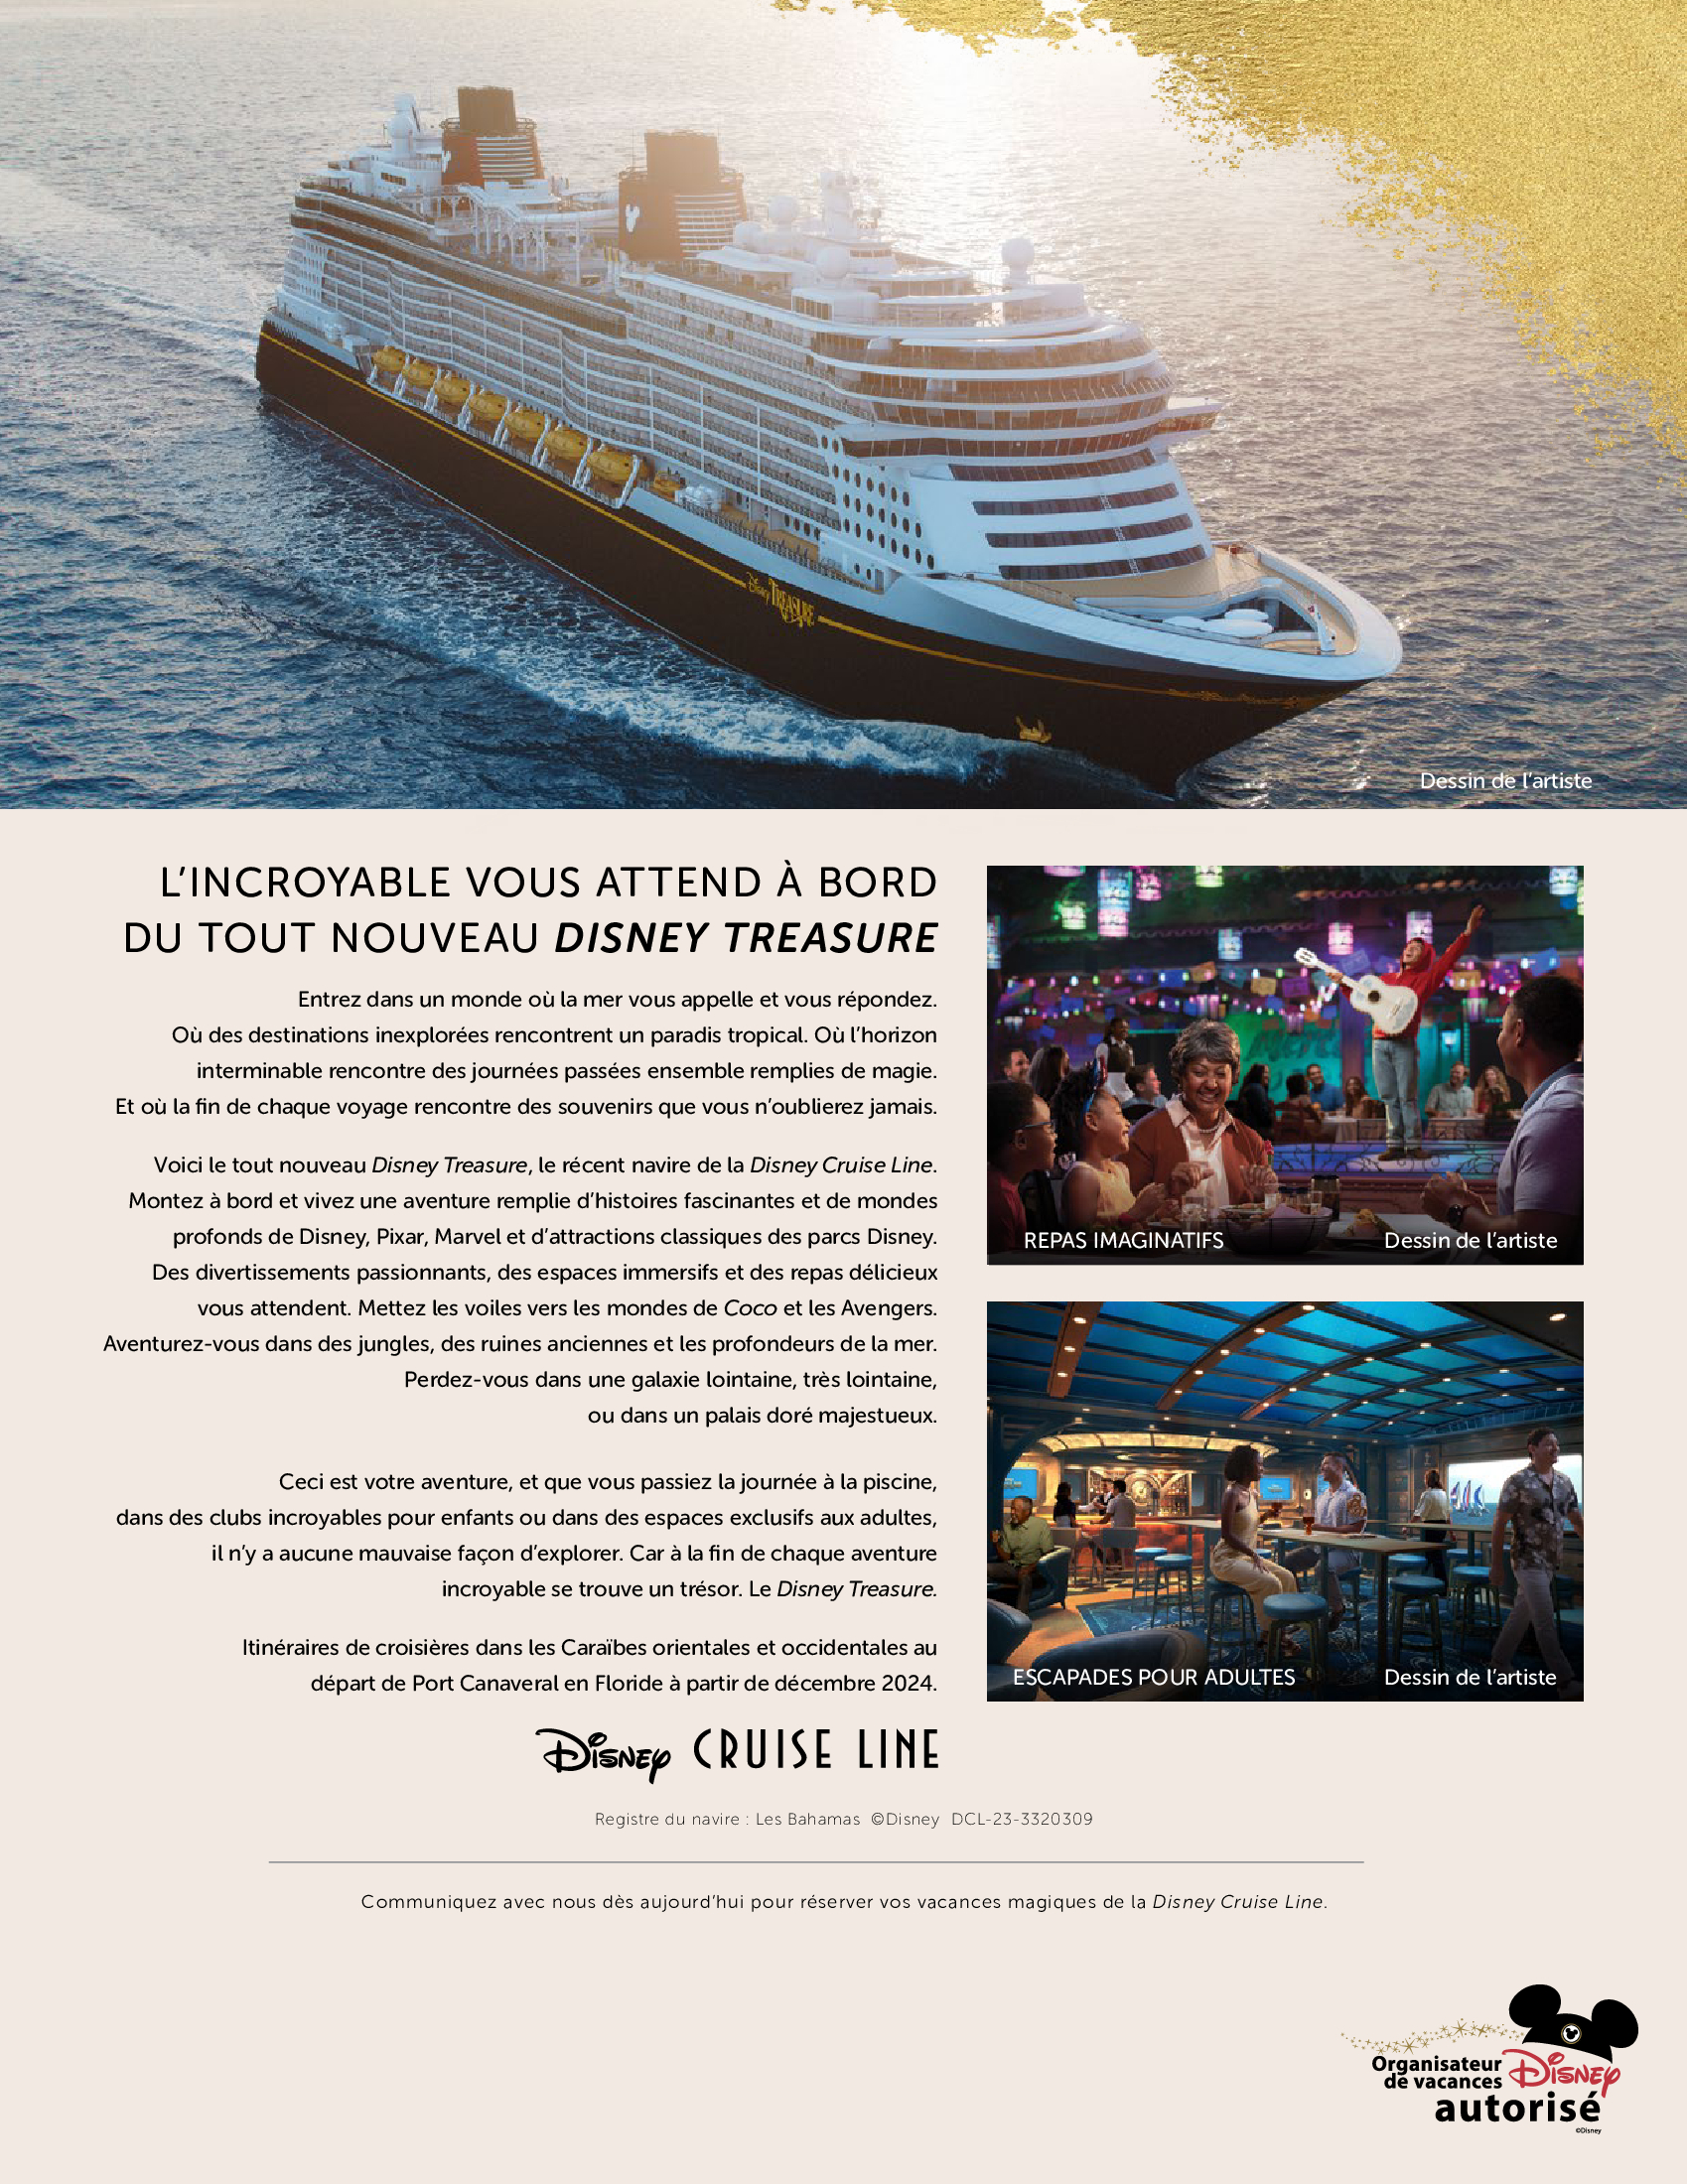 Disney Cruise Line - Résidents Canadiens, Économisez jusqu'à 25% sur certaines croisières. Réservez avec les Créateurs de Magie - Voyages Synergia